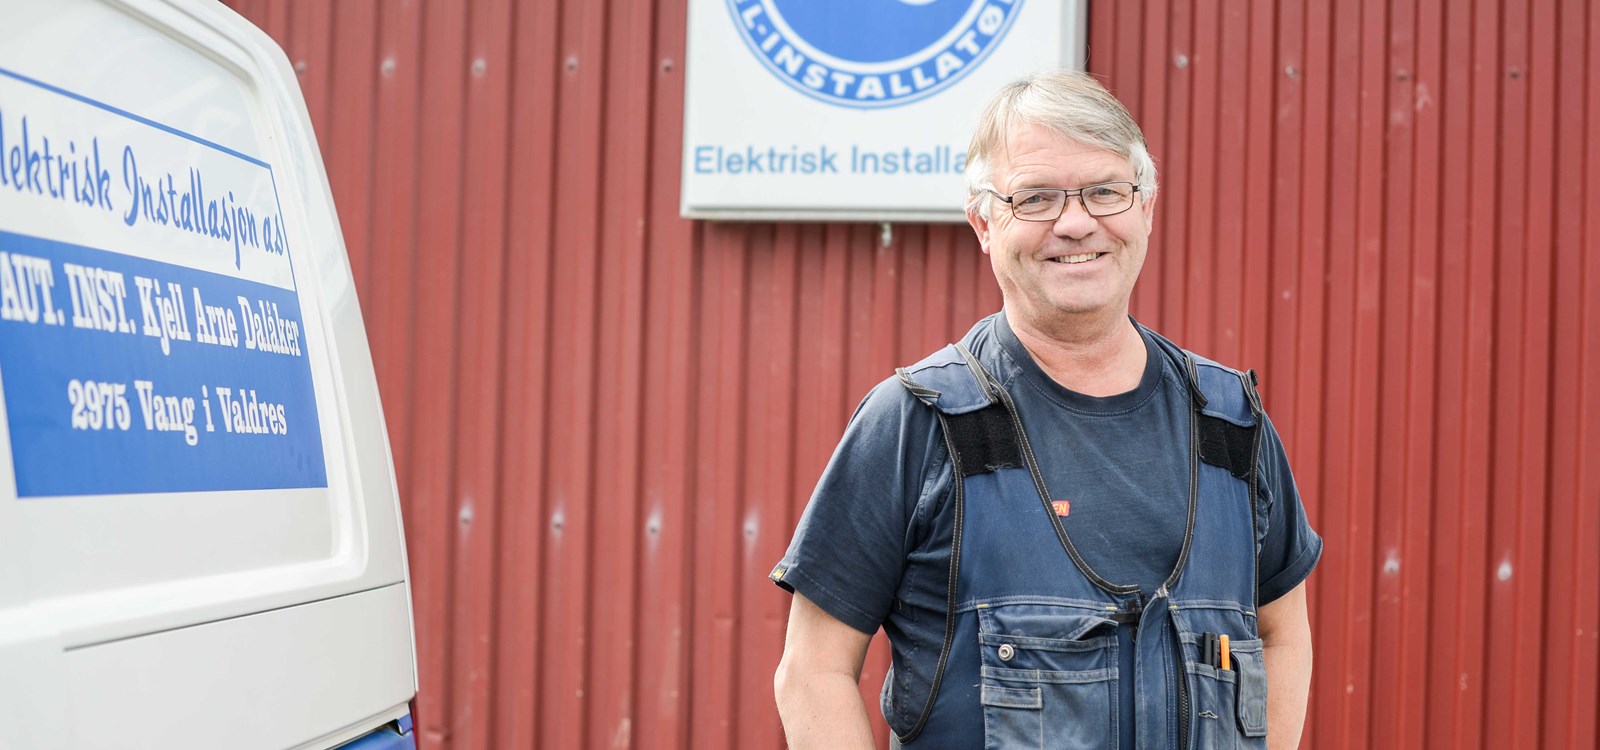 Kjell Arne Dalåker treng både kontormedarbeidar og montør til Elektrisk installasjon AS.